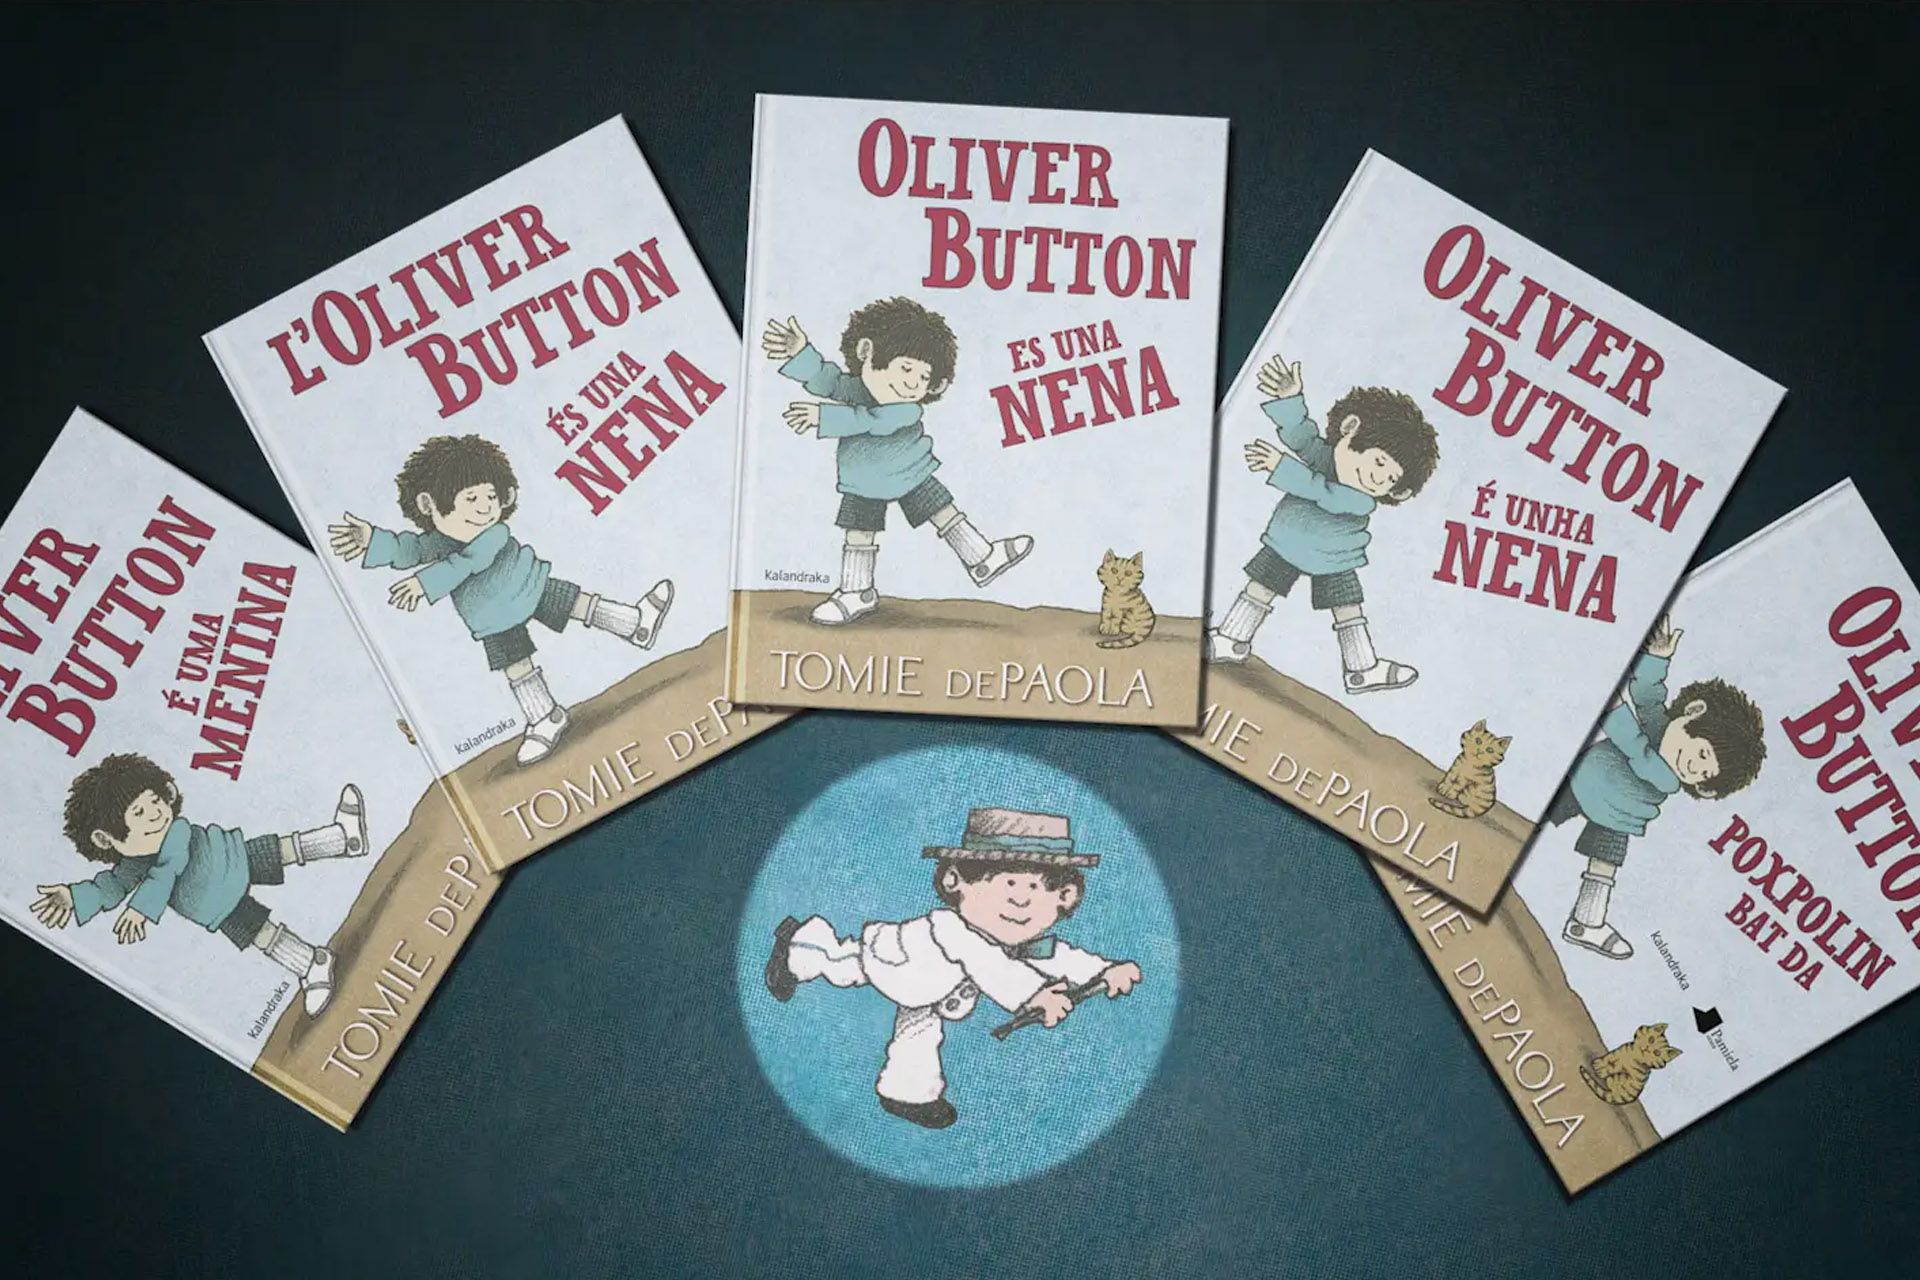 Oliver button es una nena